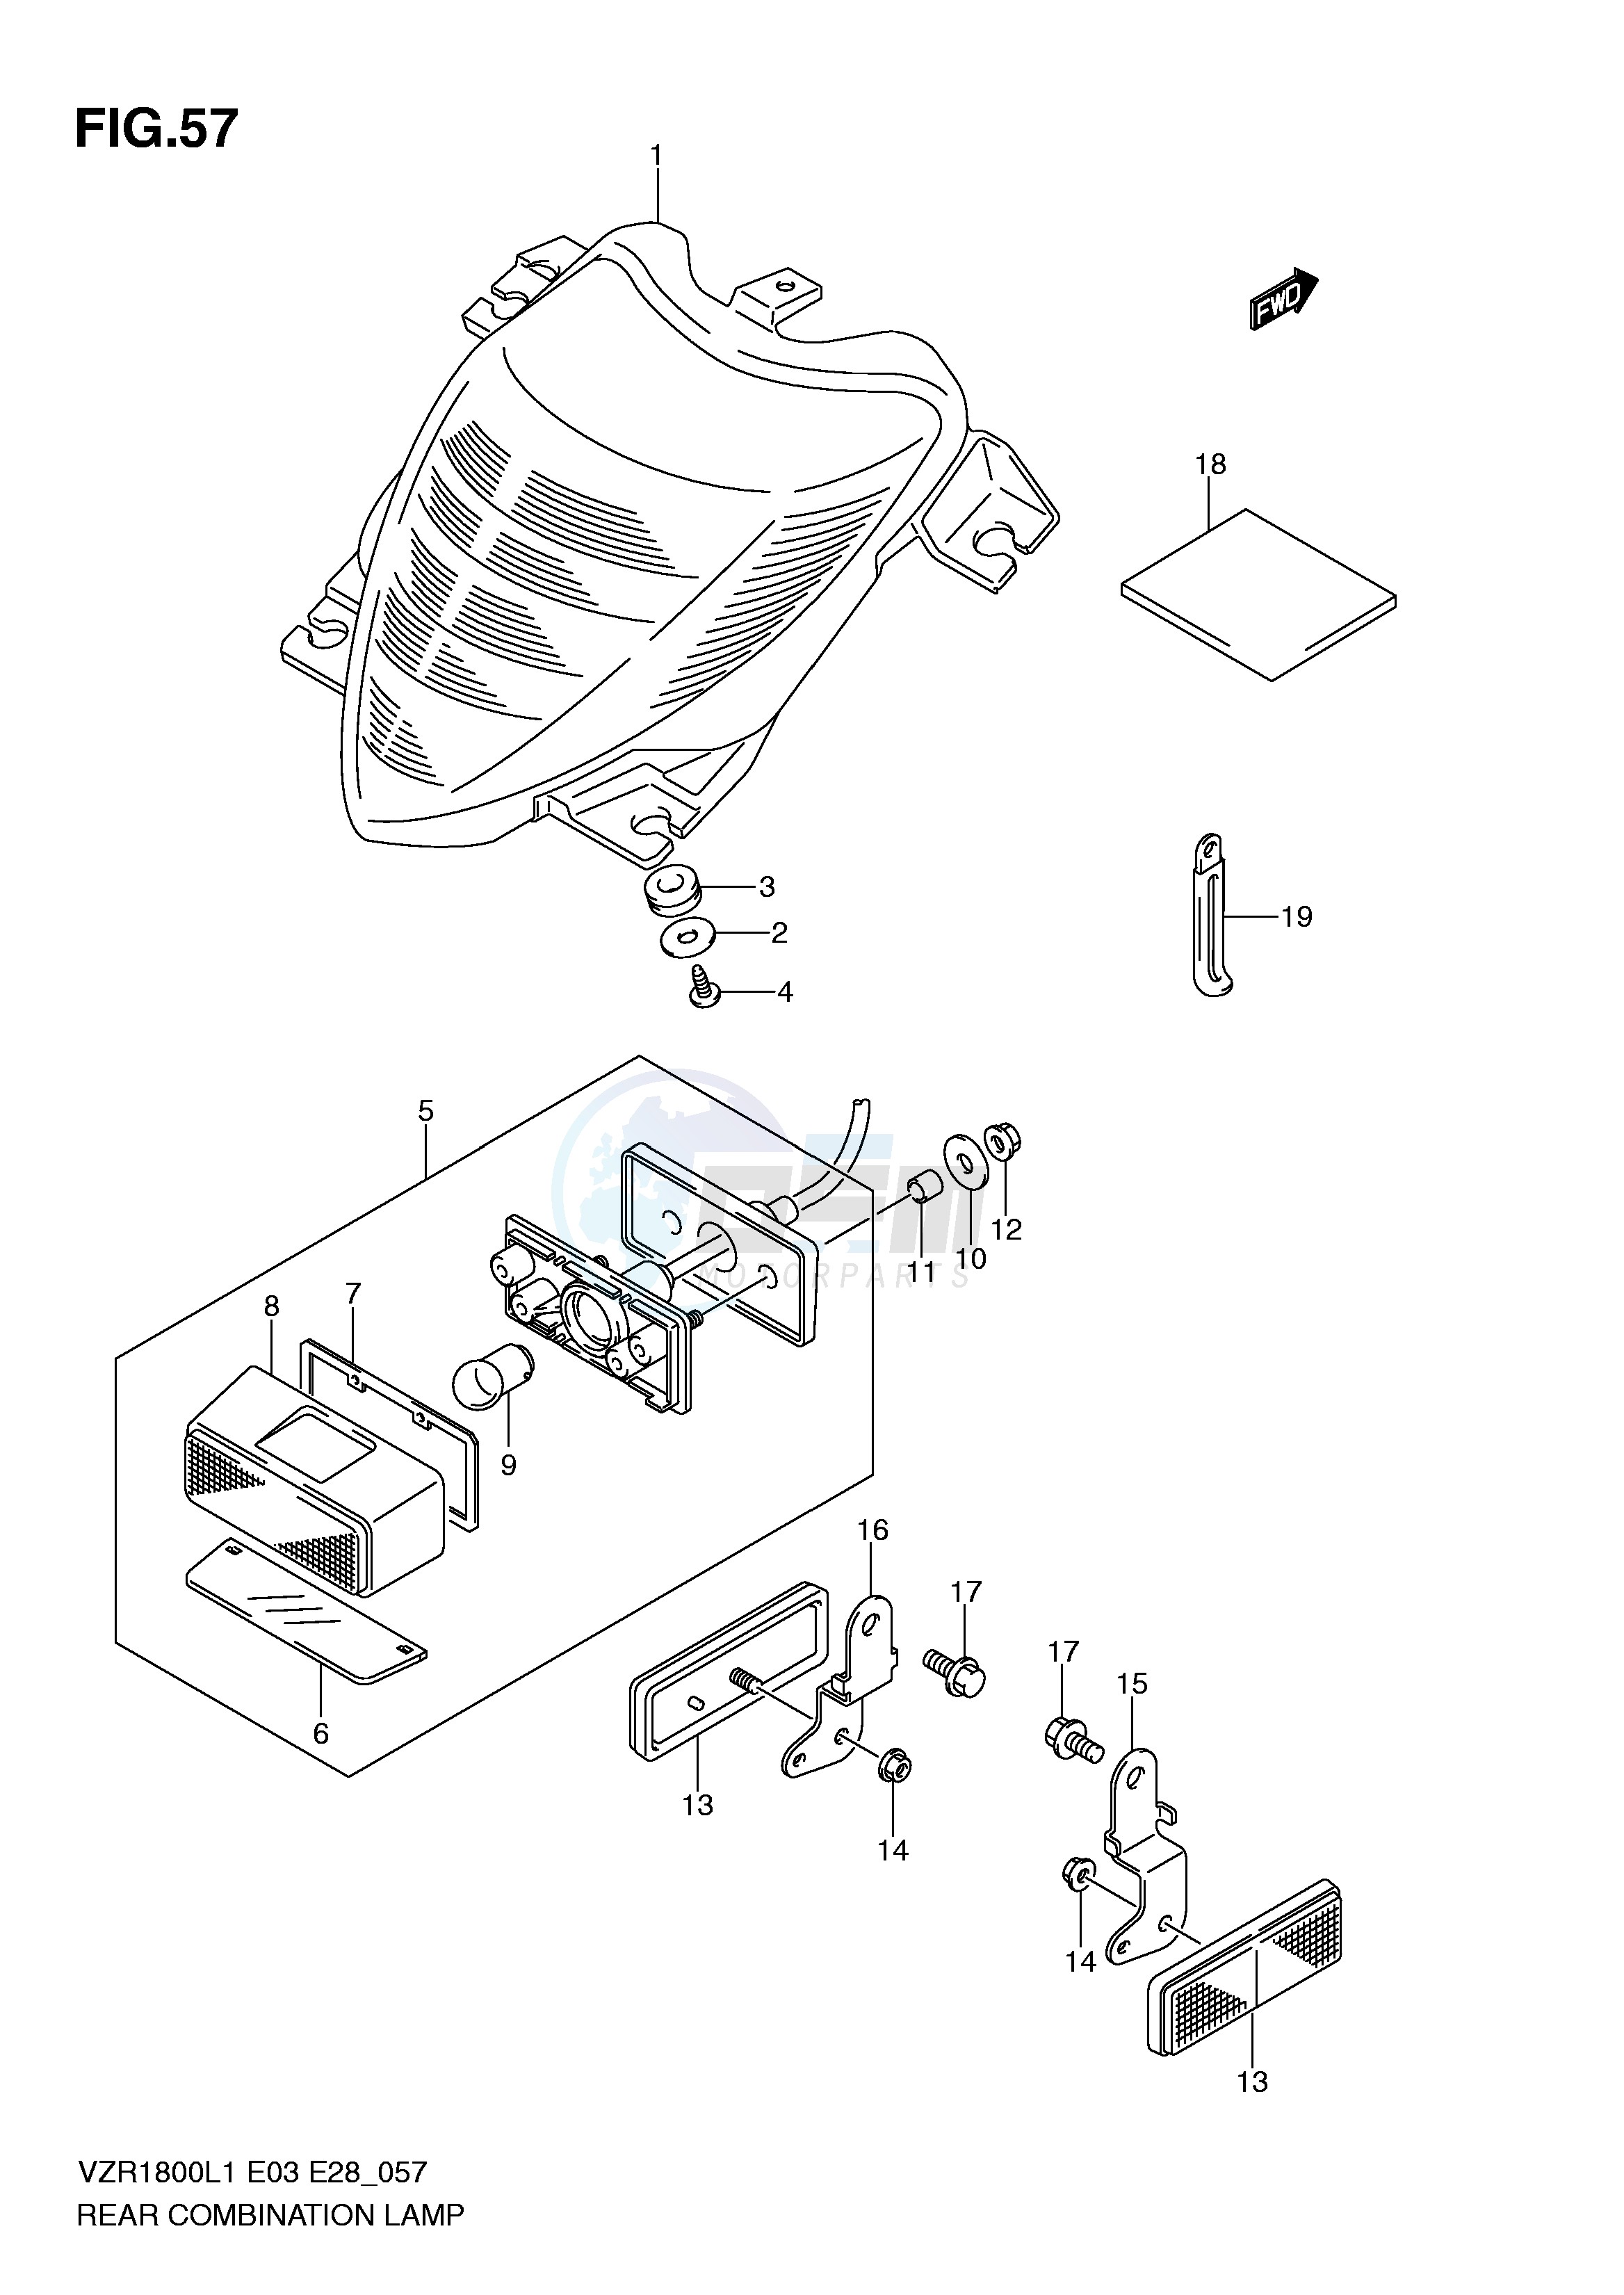 REAR COMBINATION LAMP (VZR1800ZL1 E3) blueprint